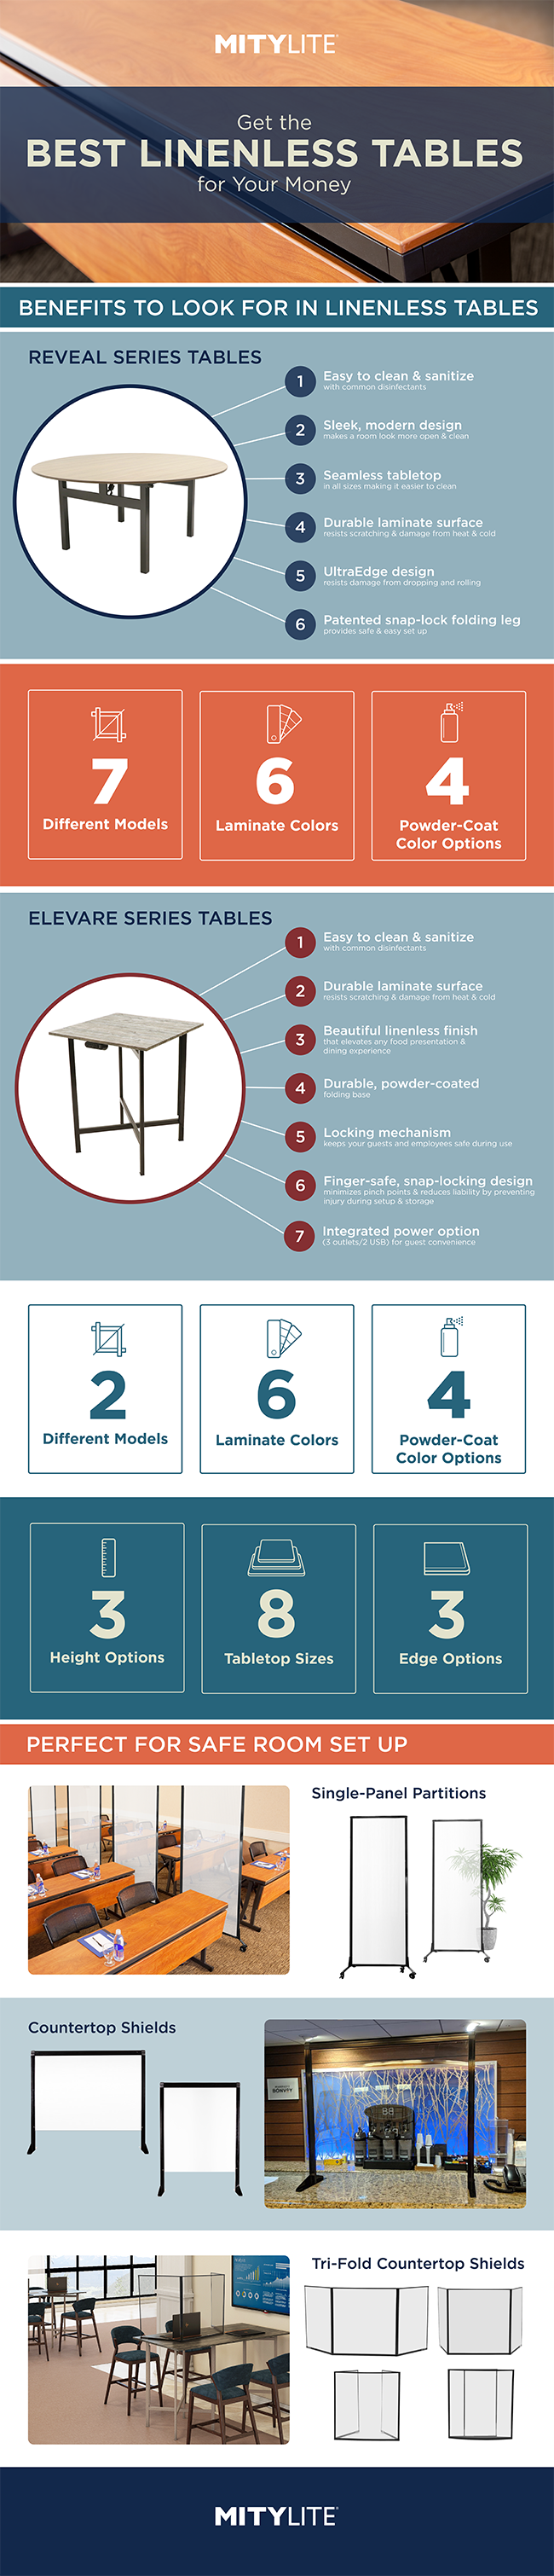 Hohes Infografikbild über Tische und Schilde